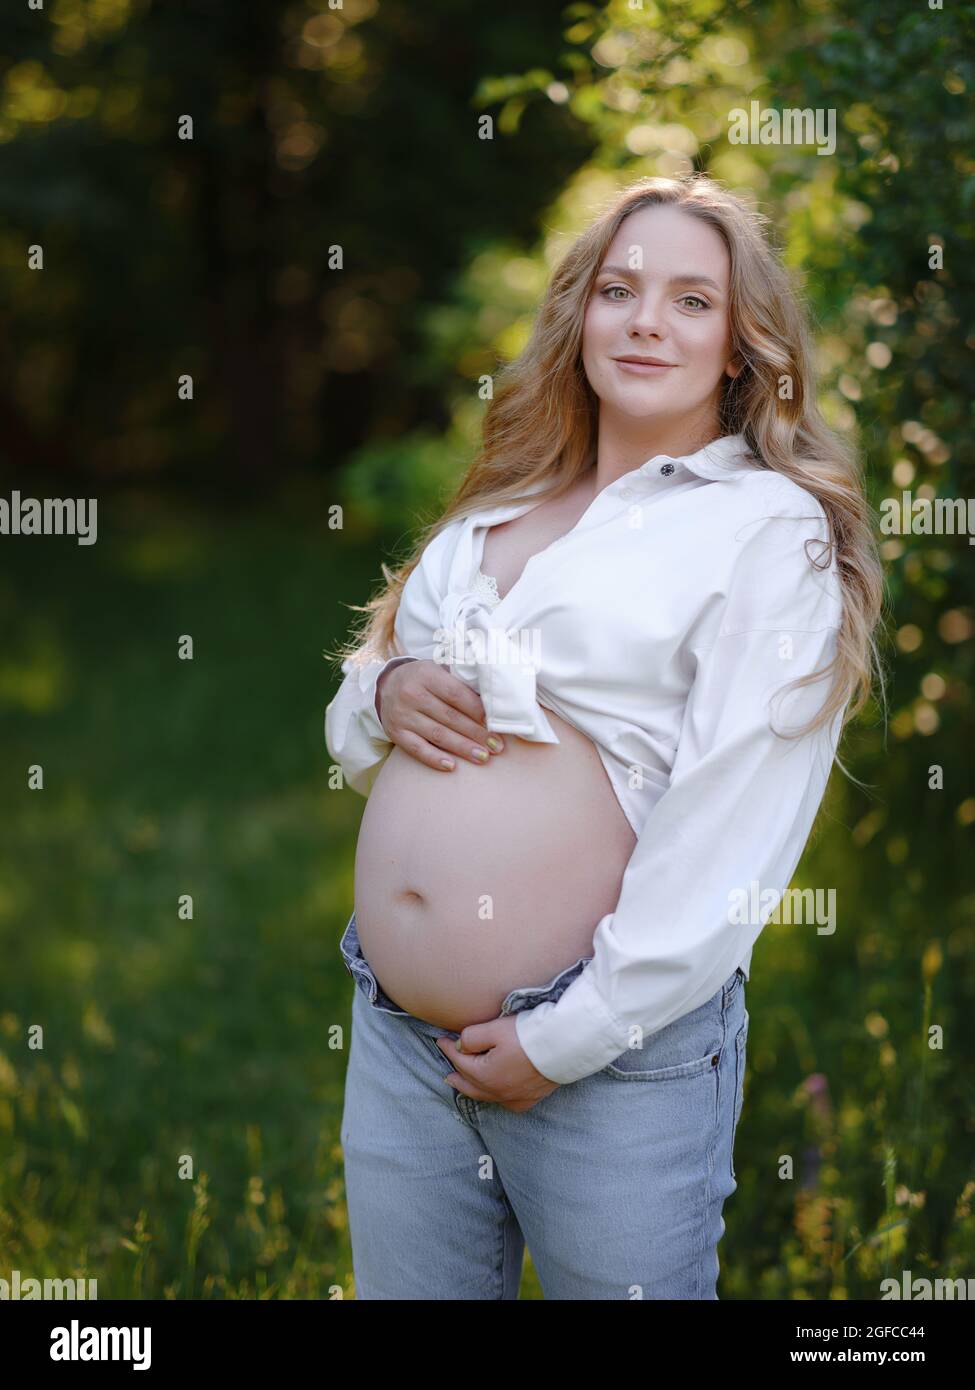 Blonde Schwangere in weißem Hemd und Jeans genießt die Stille und Schönheit  der Natur. Idee von Gesundheit und Schönheit der Schwangerschaft  Stockfotografie - Alamy